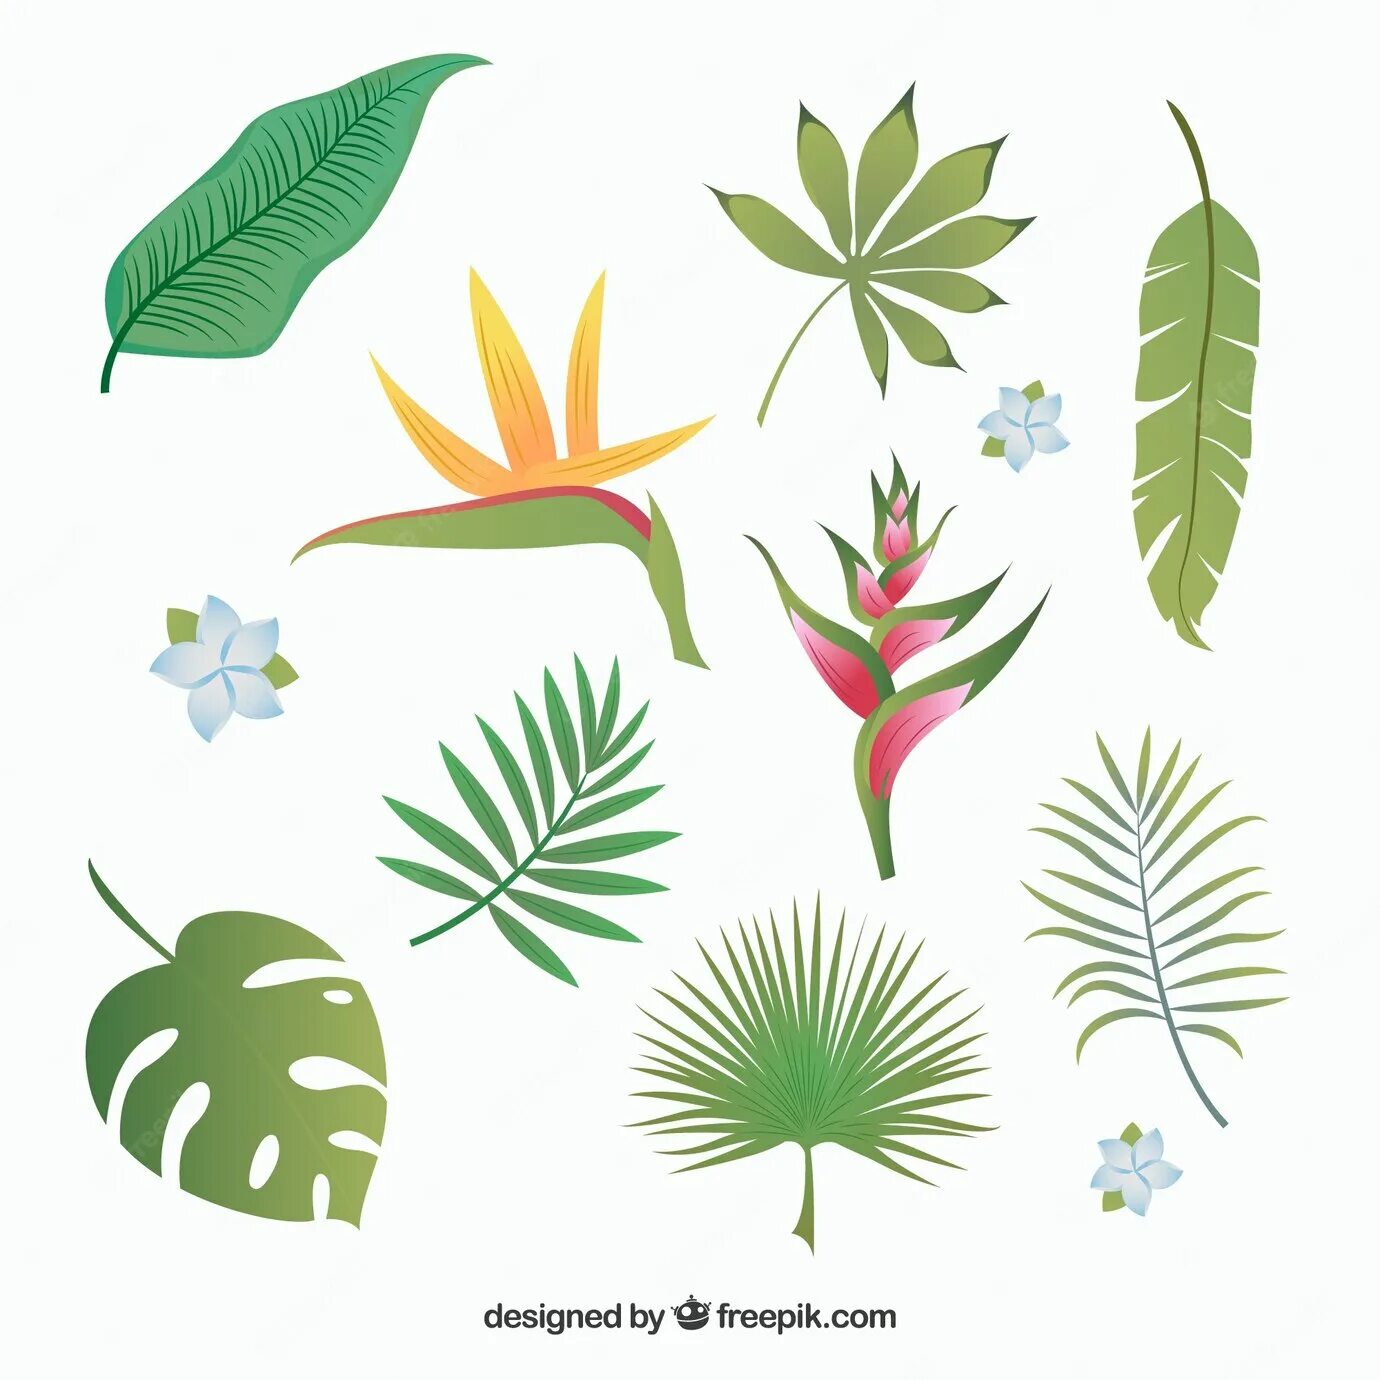 Leaves collection. Фон тропических листьев. Картинки для логотипов в тропическом стиле. Tropic vector. Обои крупные листья коричневые на темном фоне тропики.